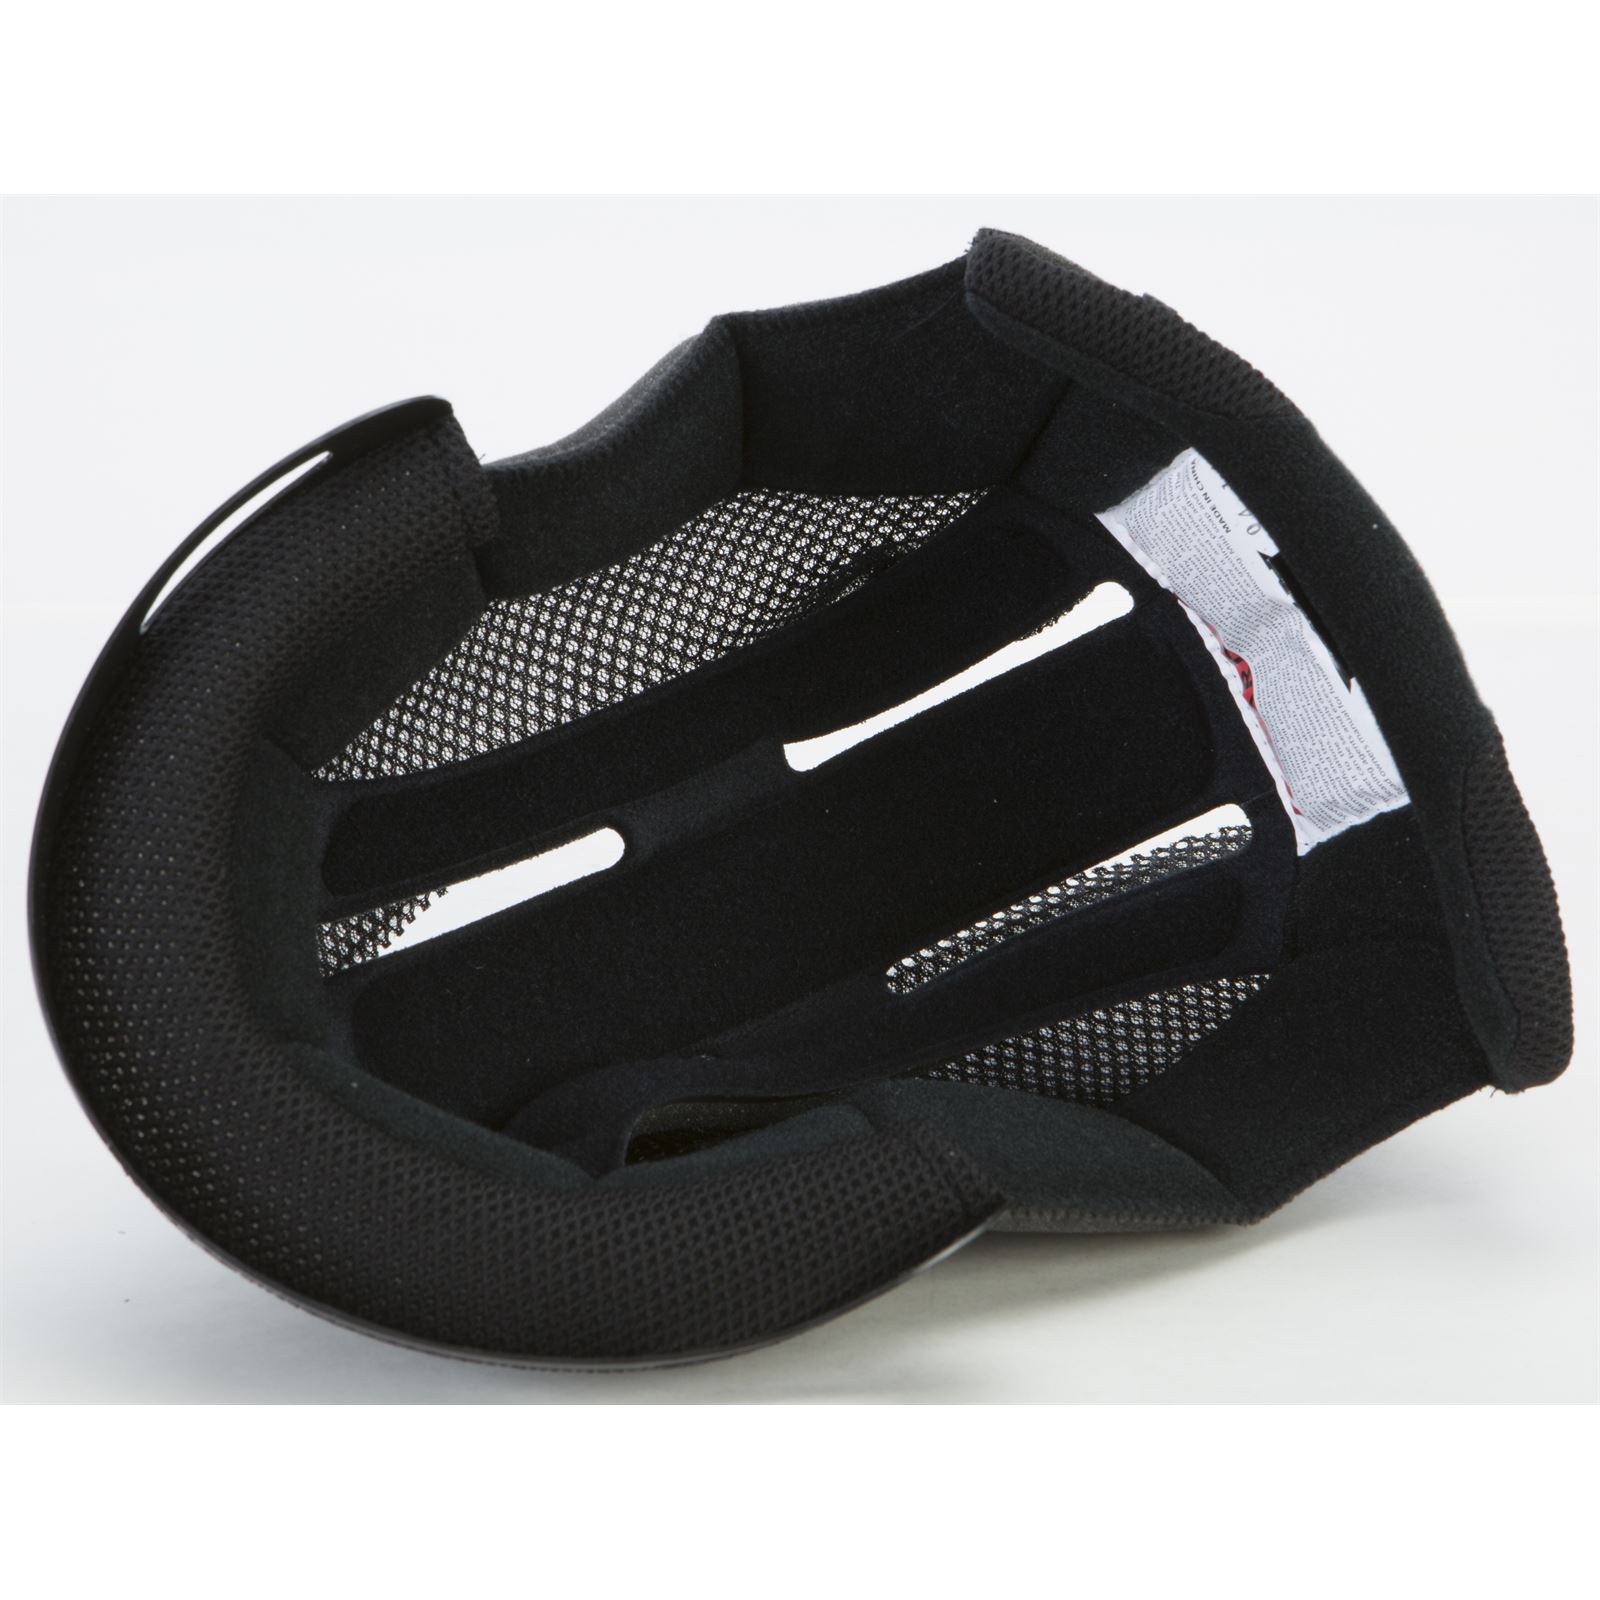 Fly Racing Three.4 Helmet Comfort Liner